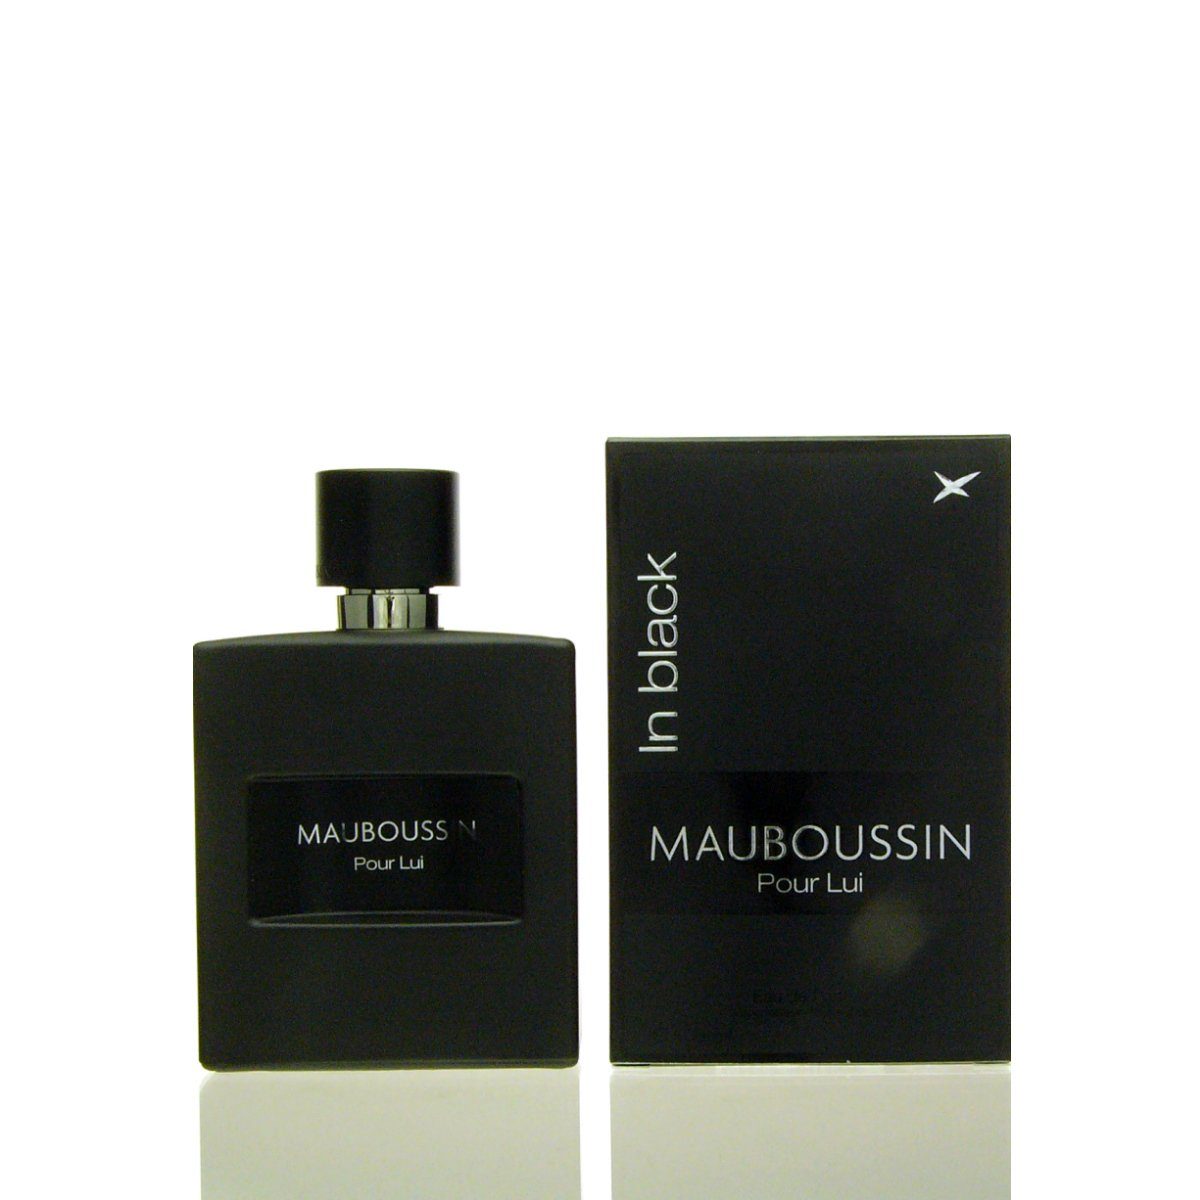 Mauboussin Eau de Eau Parfum Black Mauboussin ml de in Lui 100 Pour Parfum